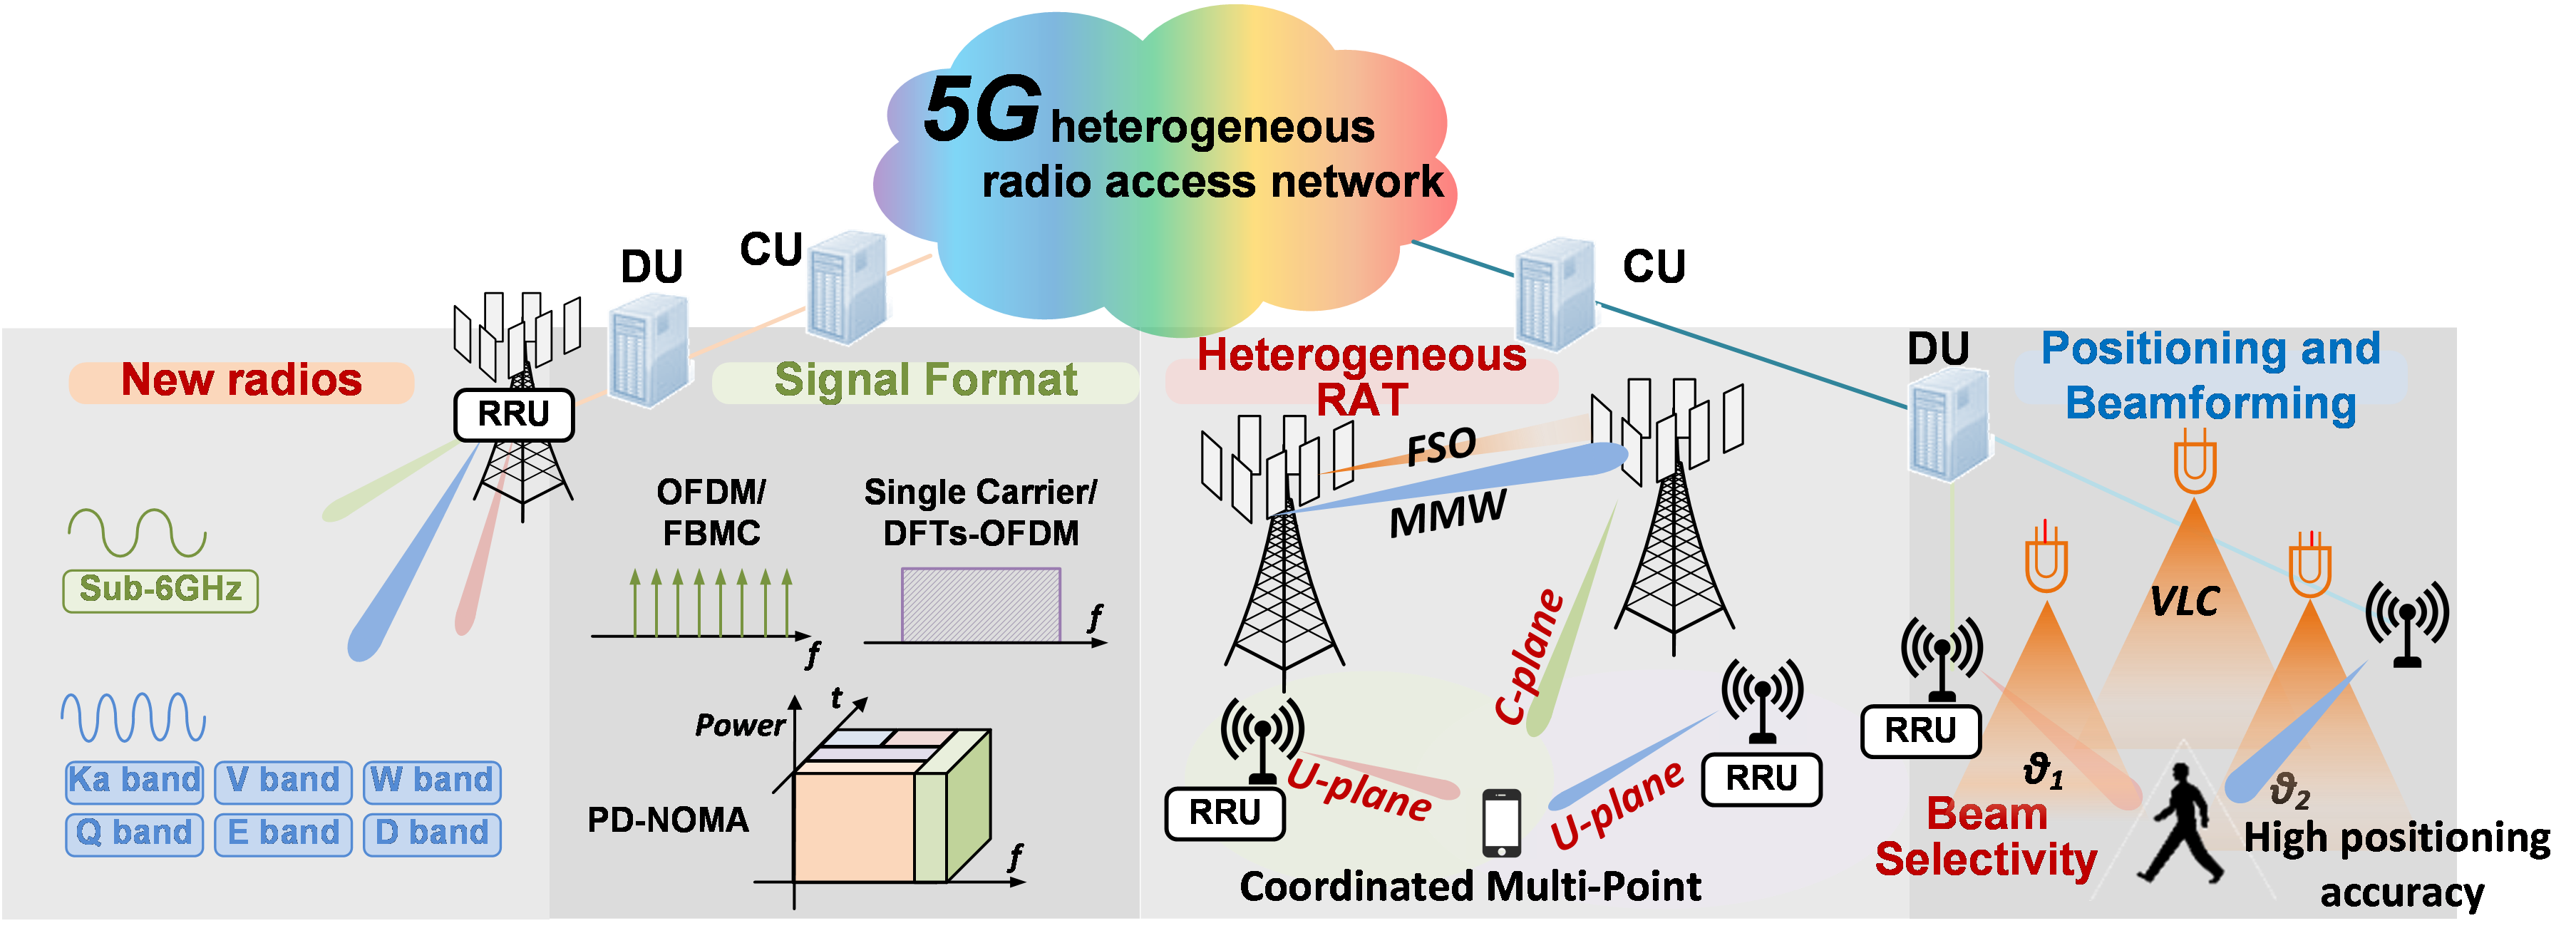 wireless_5g_heterogeneous_networks_040520A